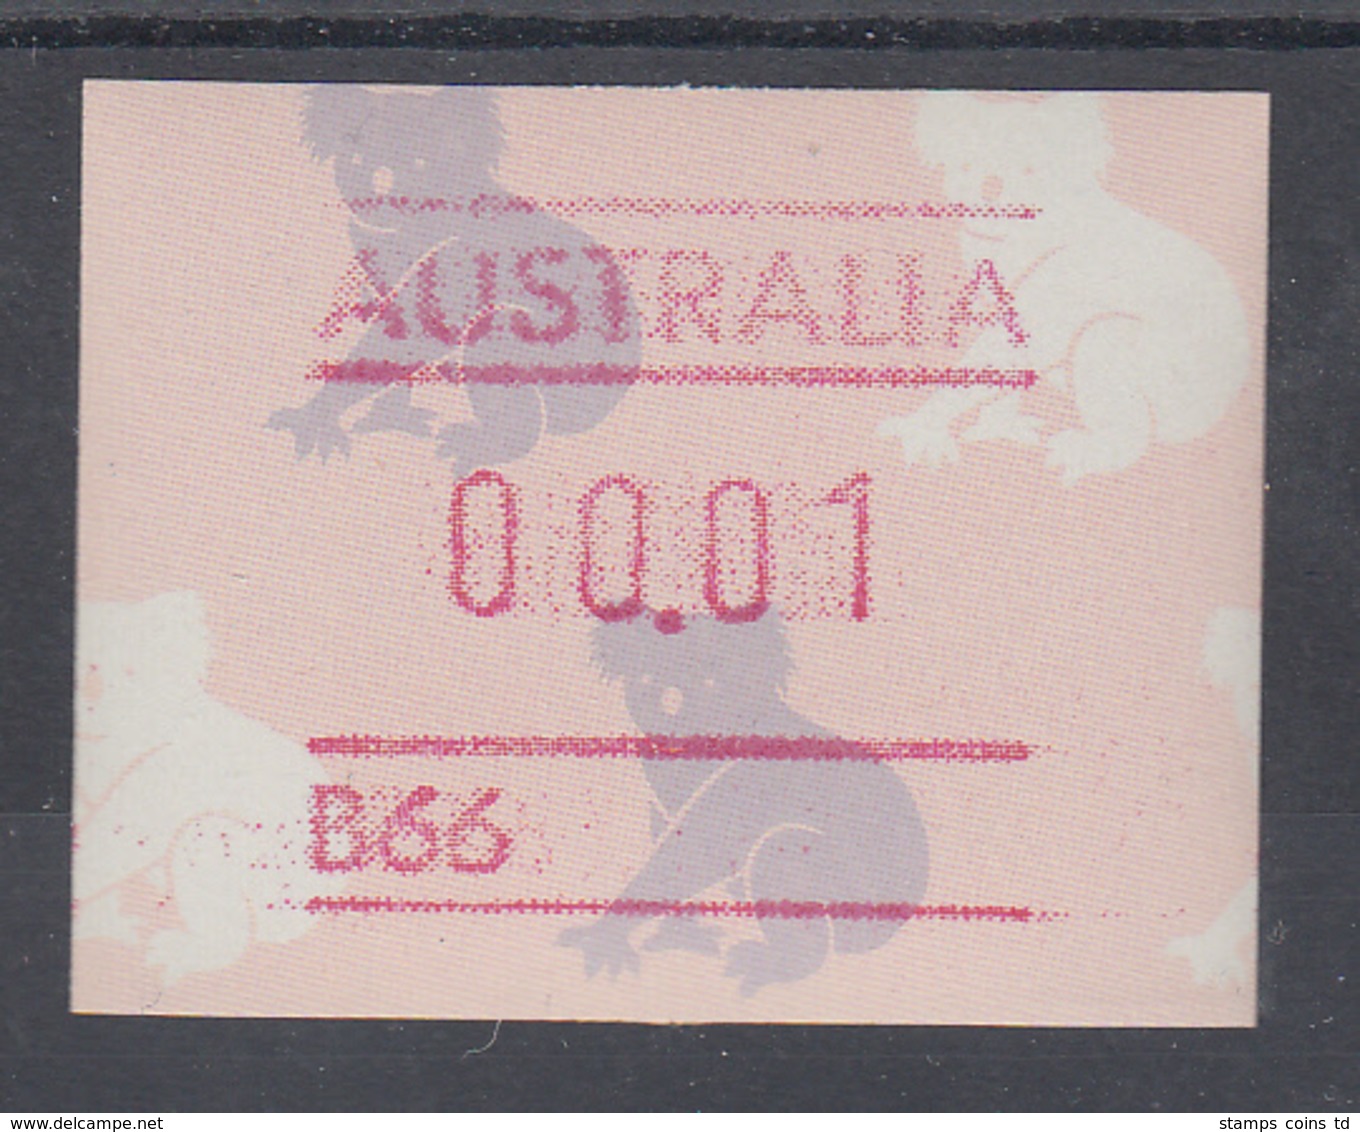 Australien Frama-ATM Koala Mit B-Nummer ** - Vignette [ATM]